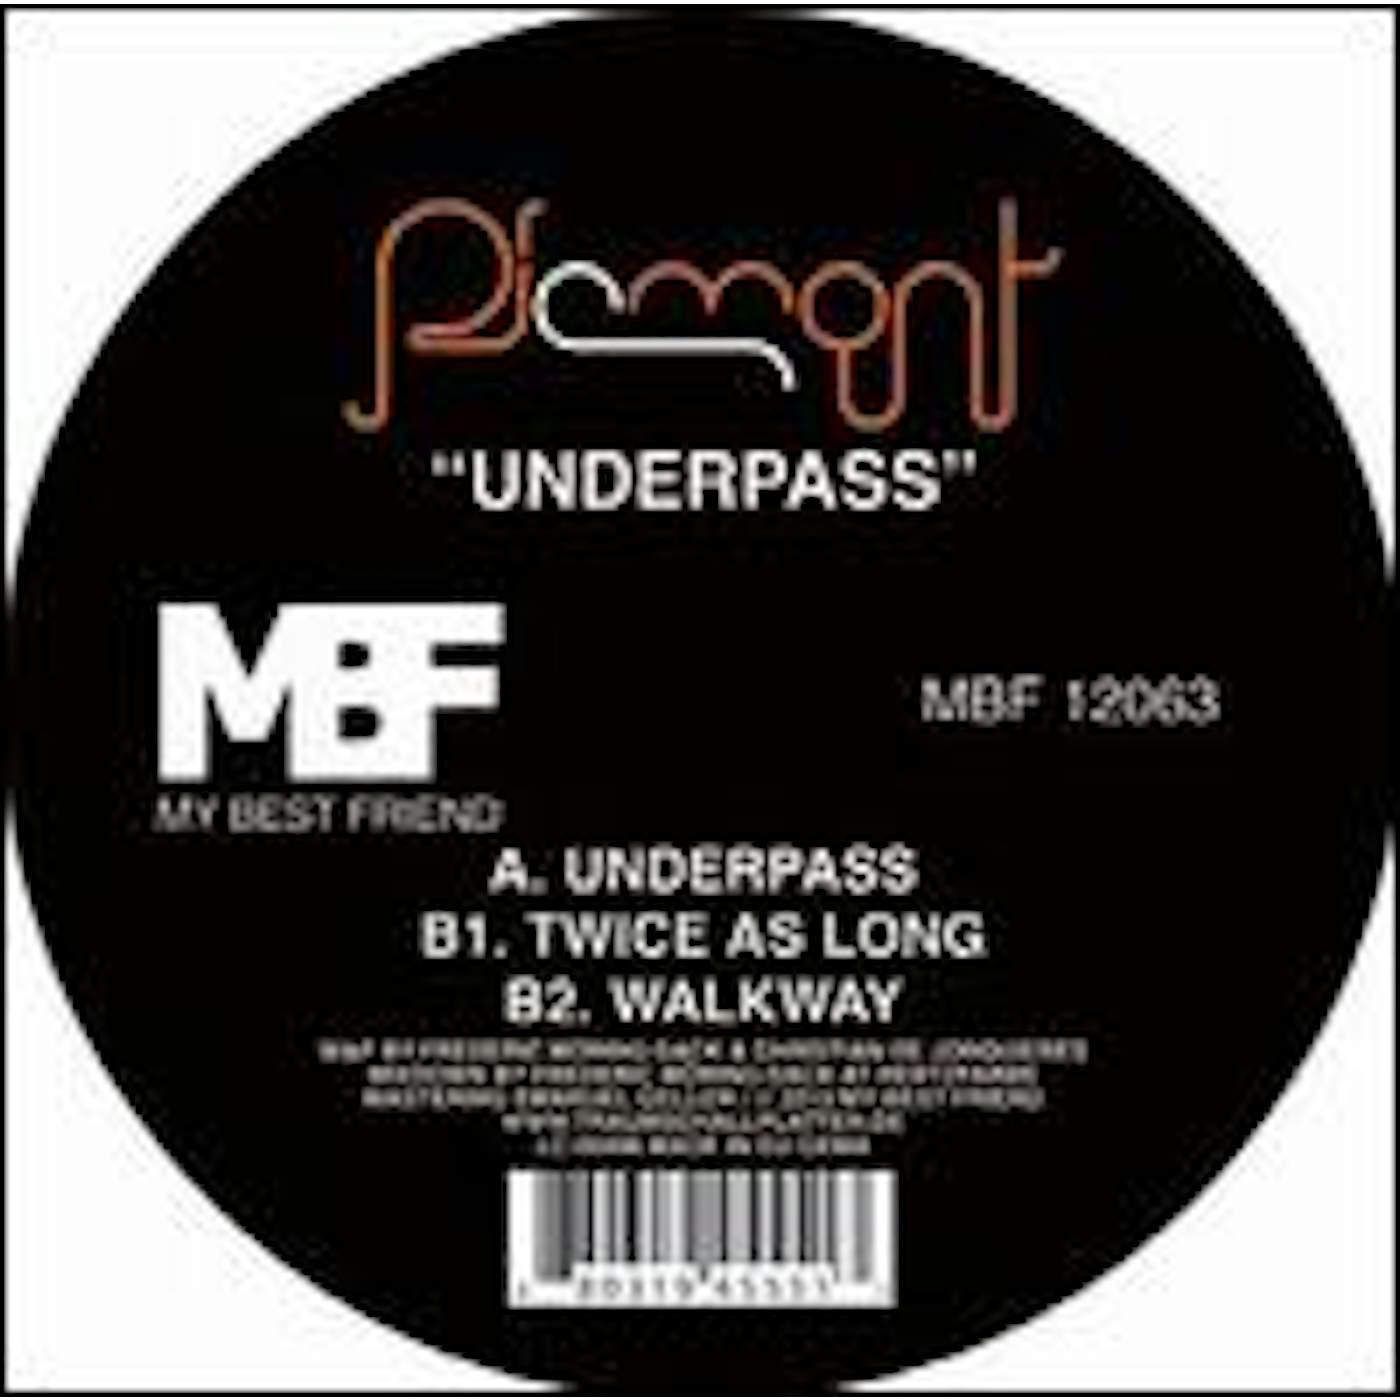 Piemont Underpass Vinyl Record